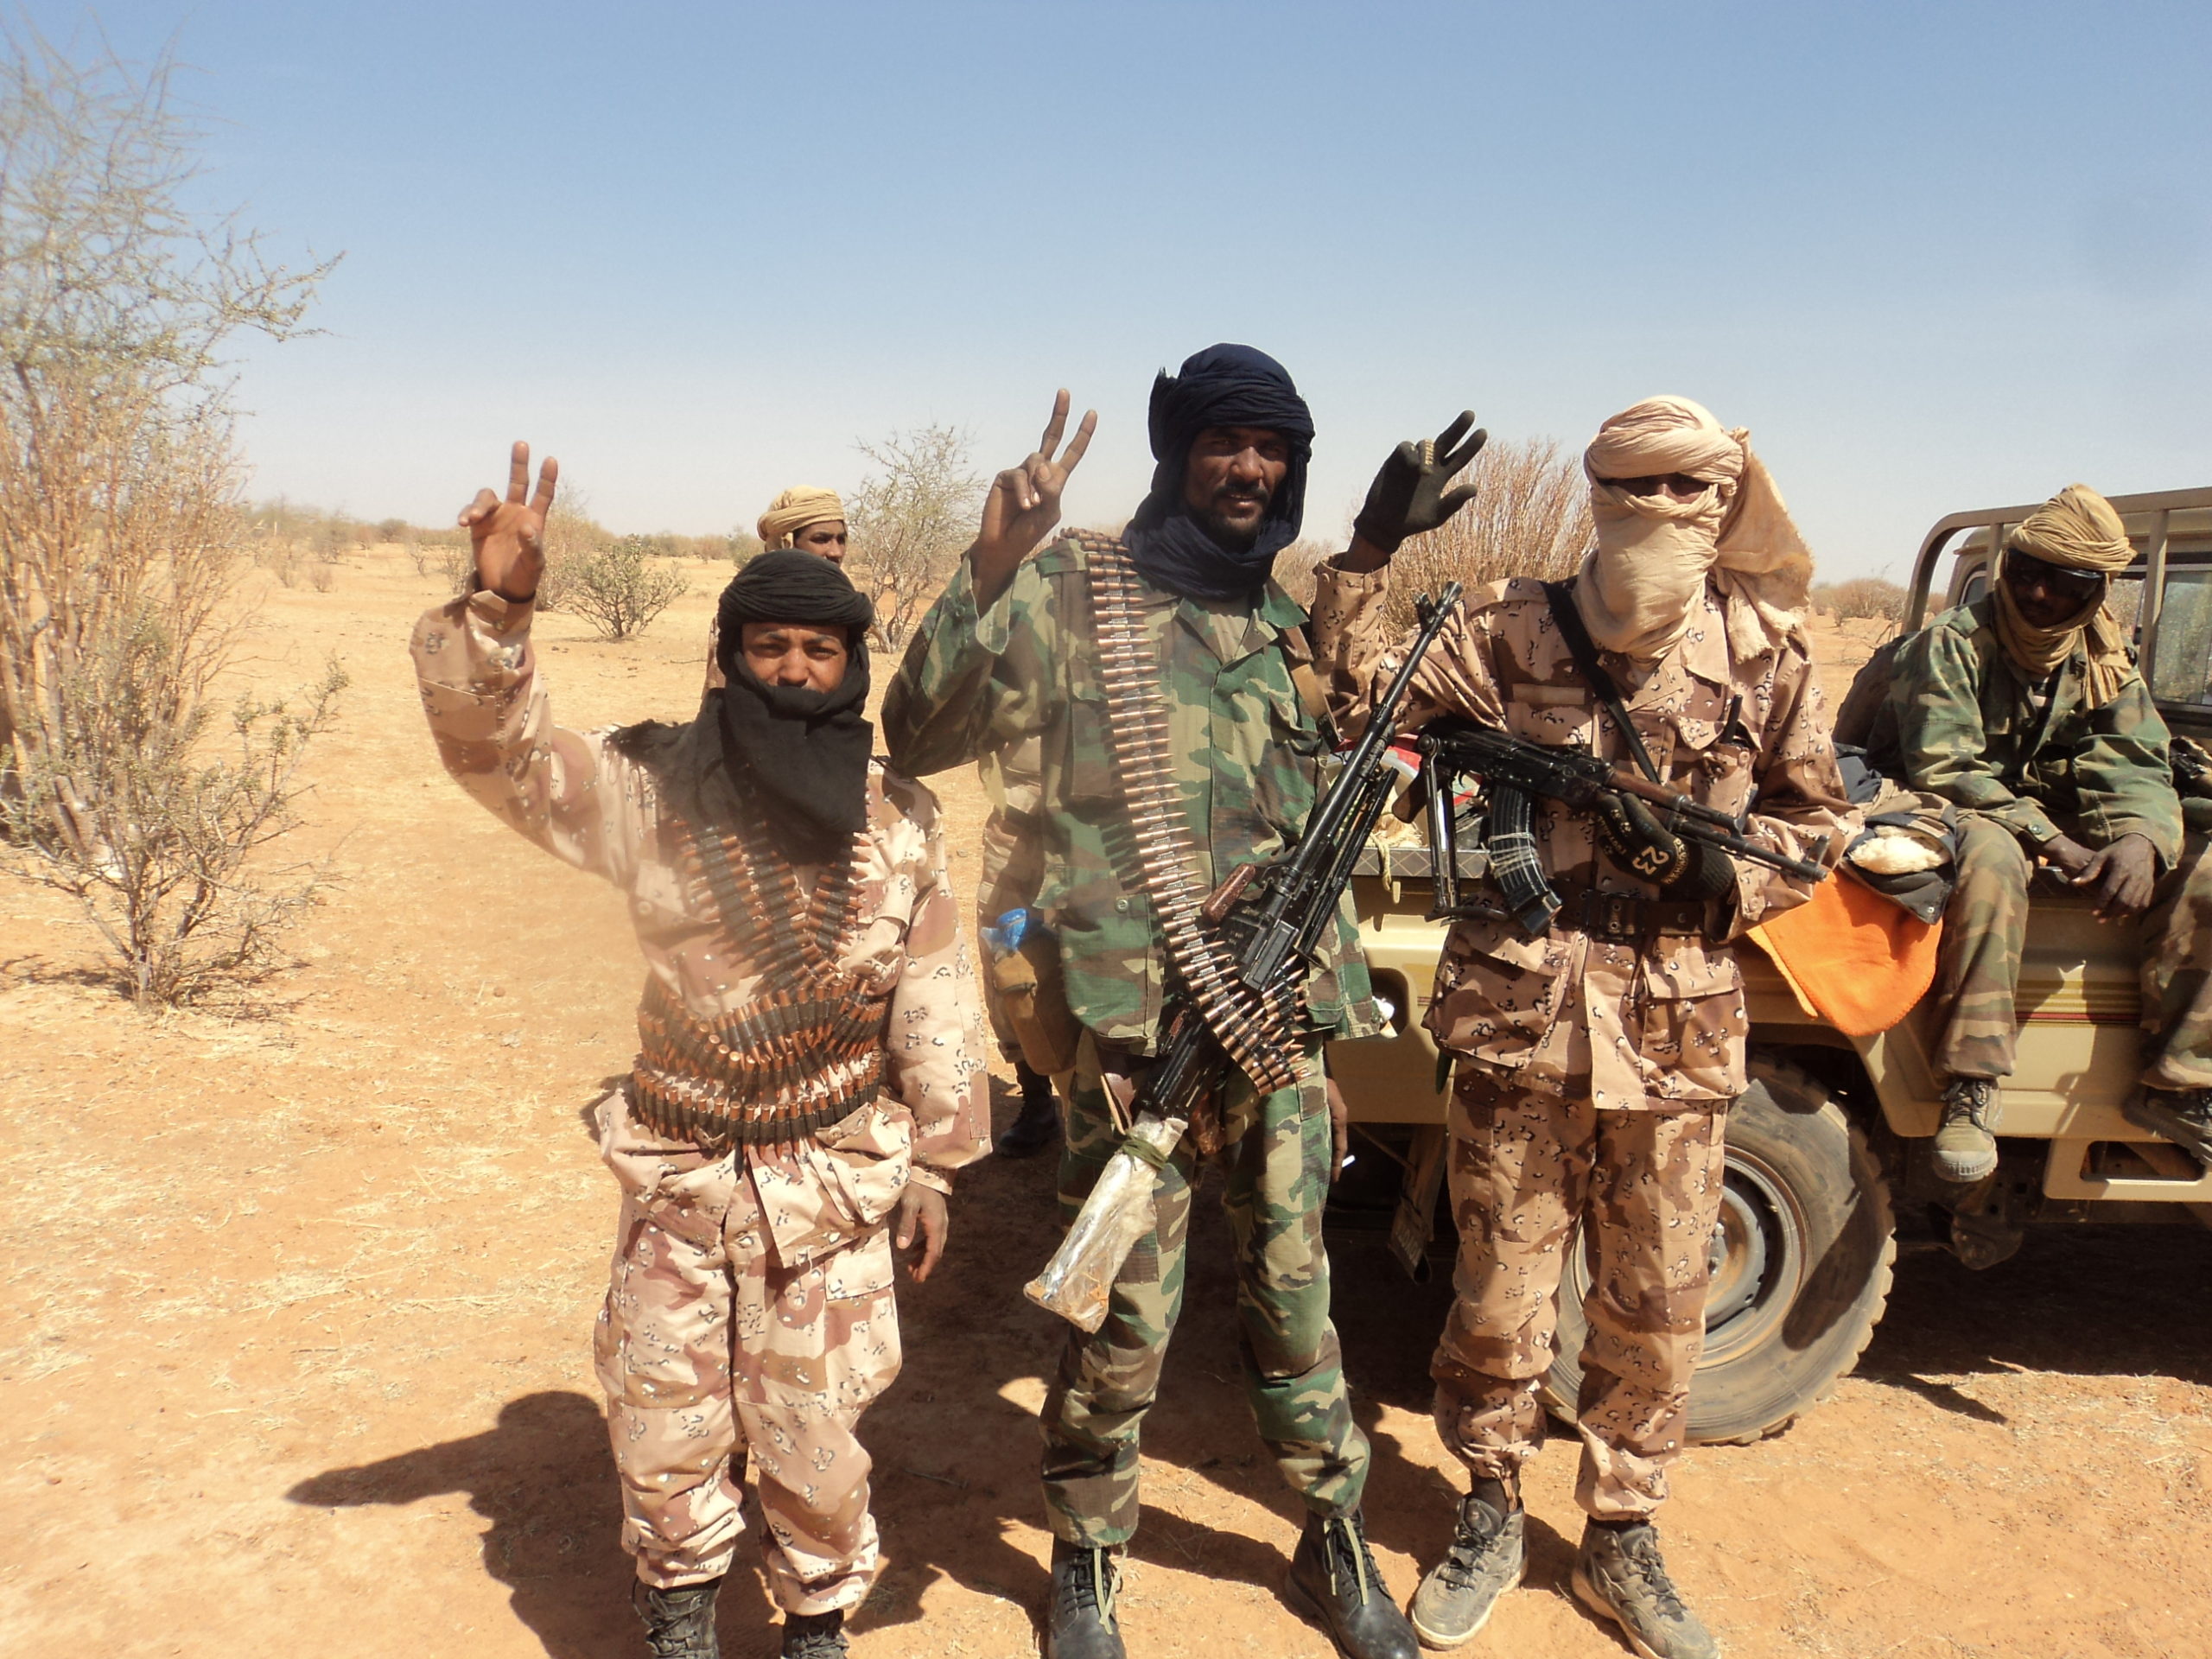 Tuaregopprørere poserer for kamera i et ørkenområde.